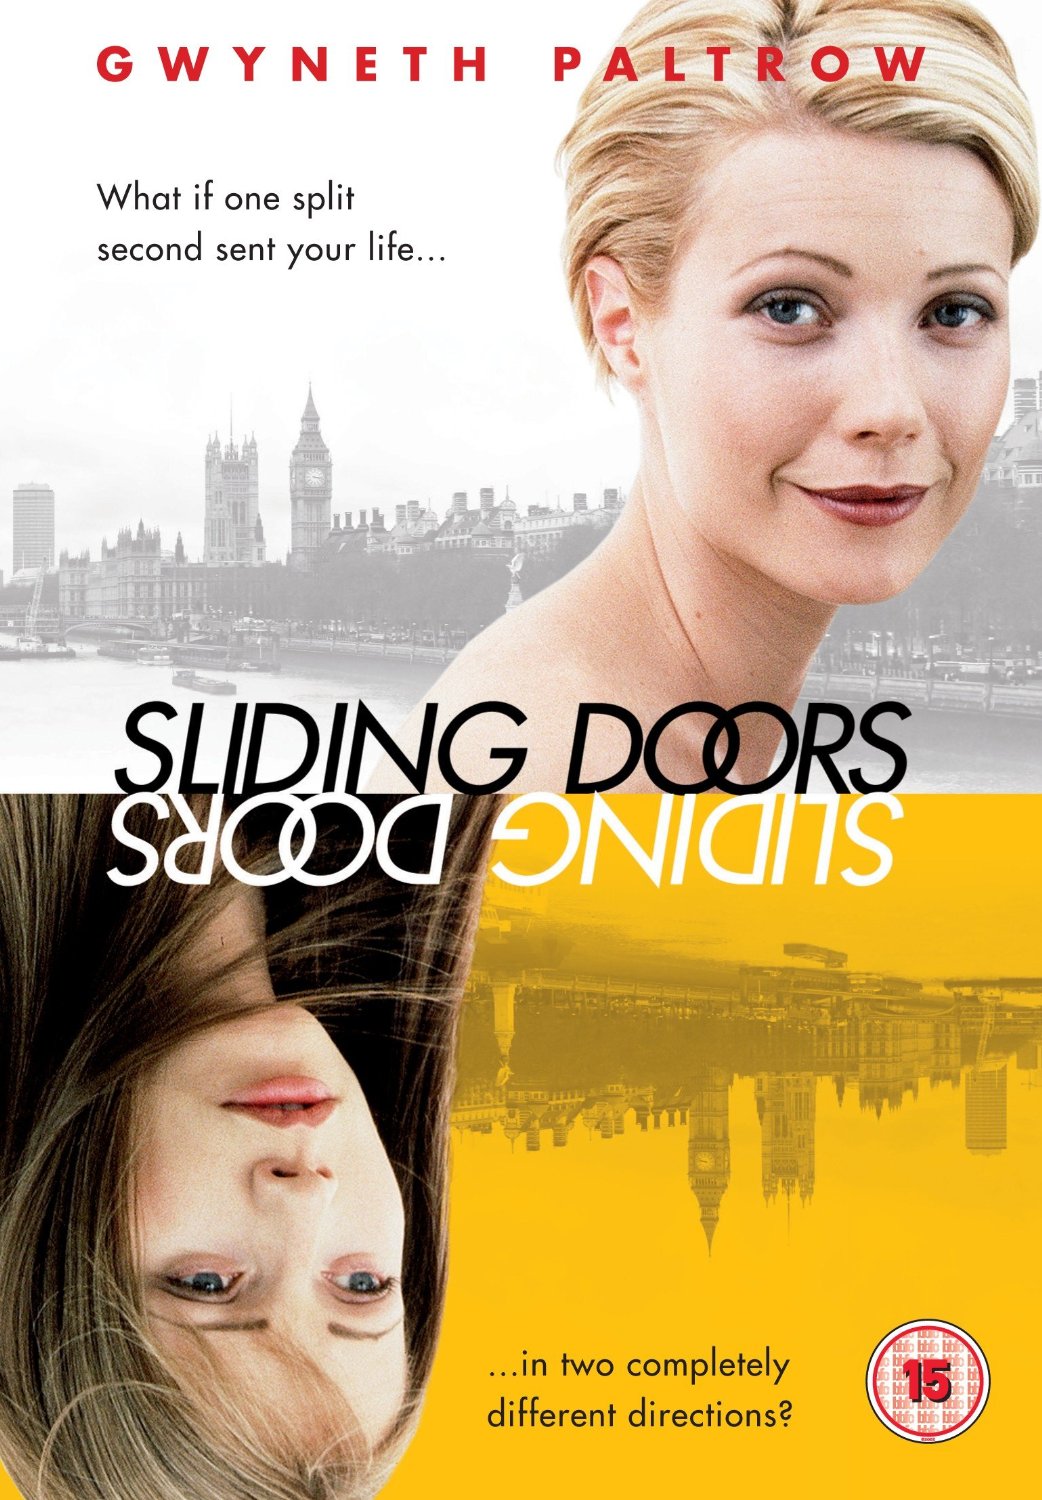 film sliding doors image collections - door design ideas